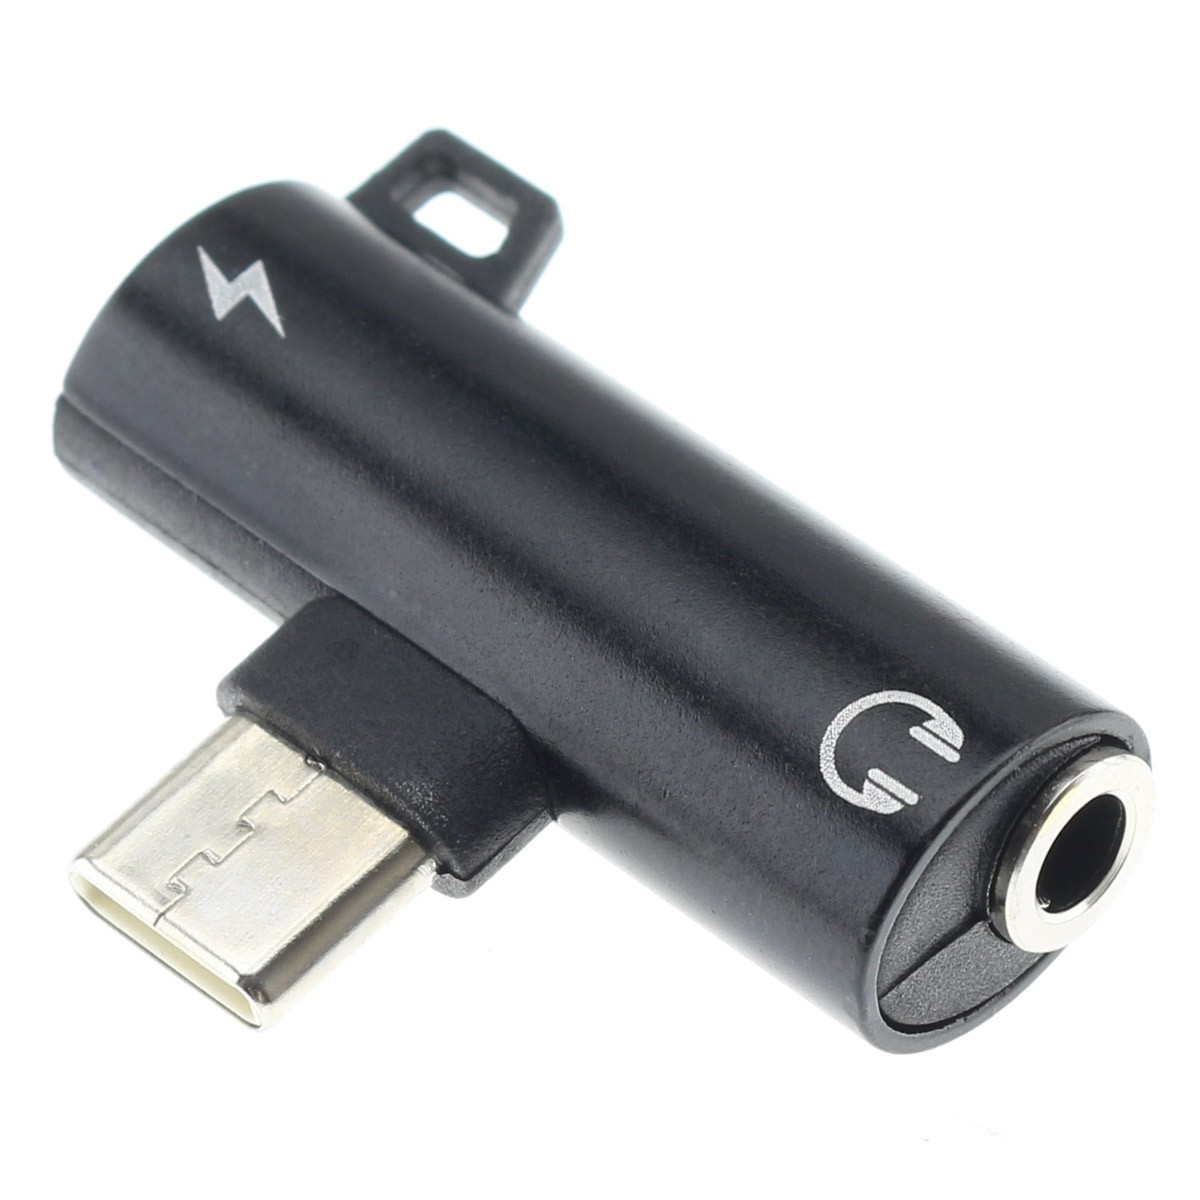 Adaptateur Audio USB Type-C mâle vers Jack 3,5 mm femelle - 4,80€